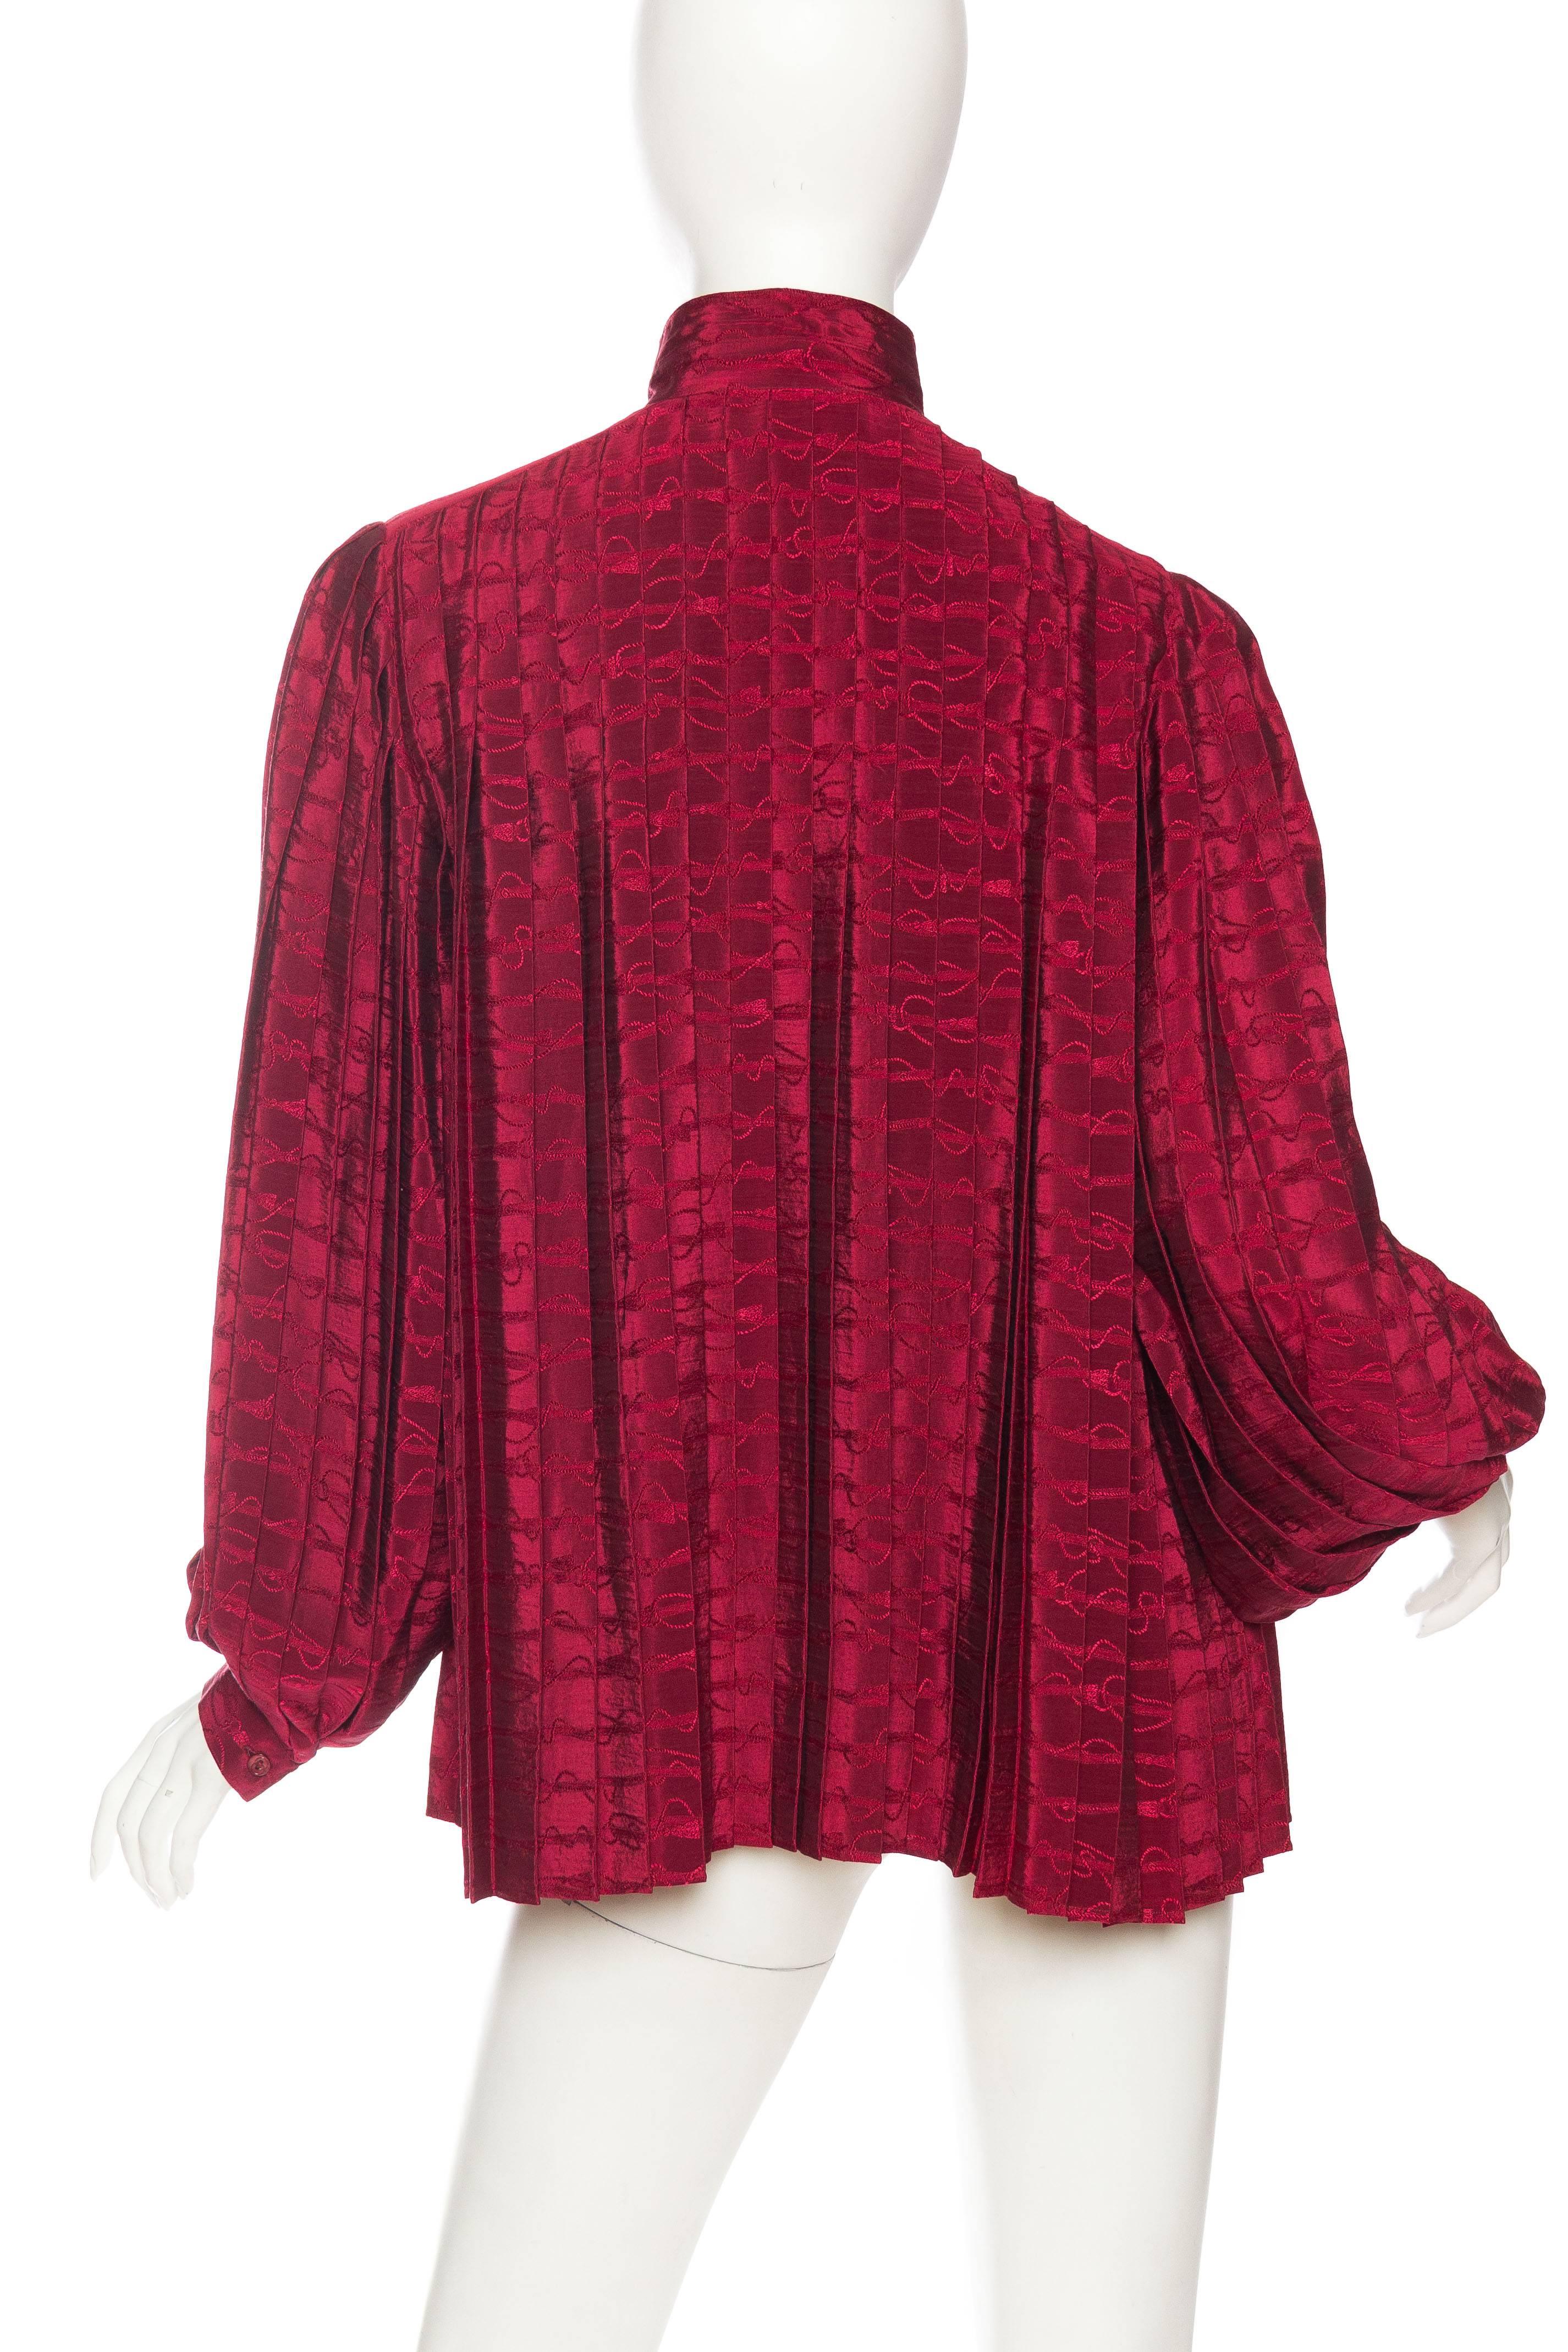 Gucci - Chemisier plissé en soie jaquard rouge canneberge, années 1970 Pour femmes en vente